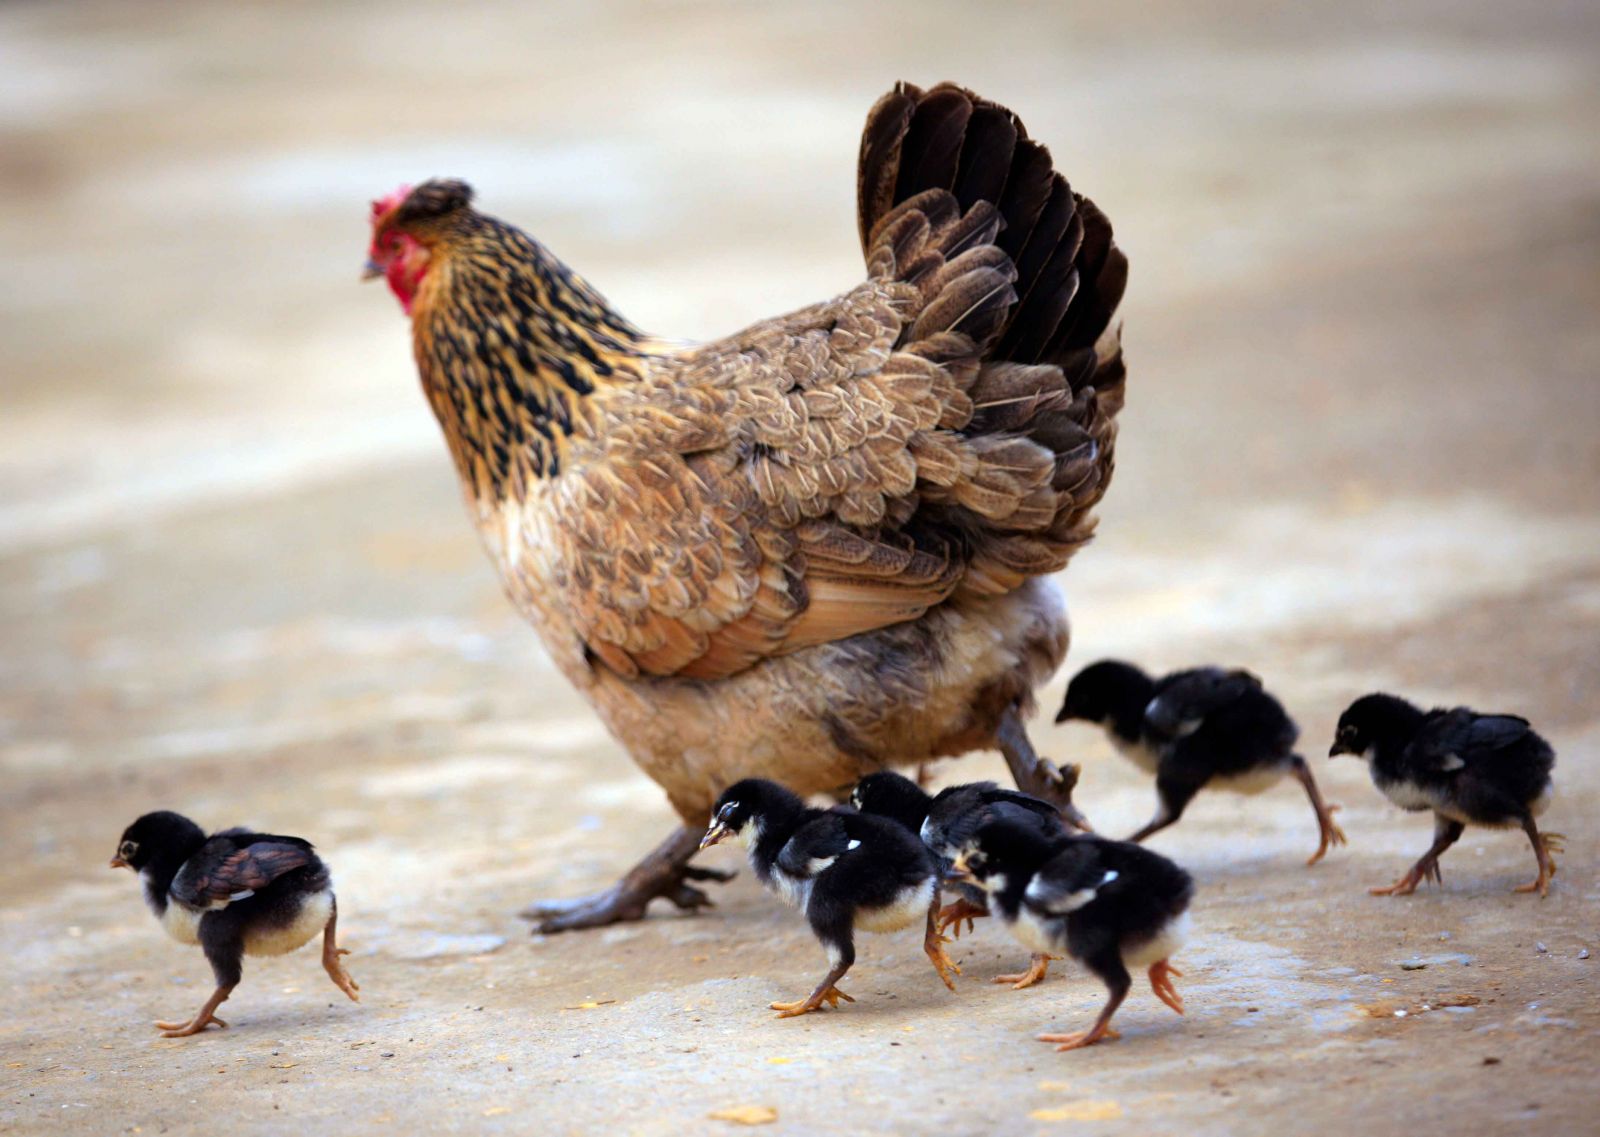 Mỗi lứa, gà 9 cựa đẻ khoảng 12-13 trứng nhưng chỉ ấp nở được khoảng 5 đến 6 con gà 9 cựa, còn lại là gà bình thường. Gà con nở đã có 6 cựa và mọc lần lượt khi lớn lên như những đàn gà lon ton trong ảnh.